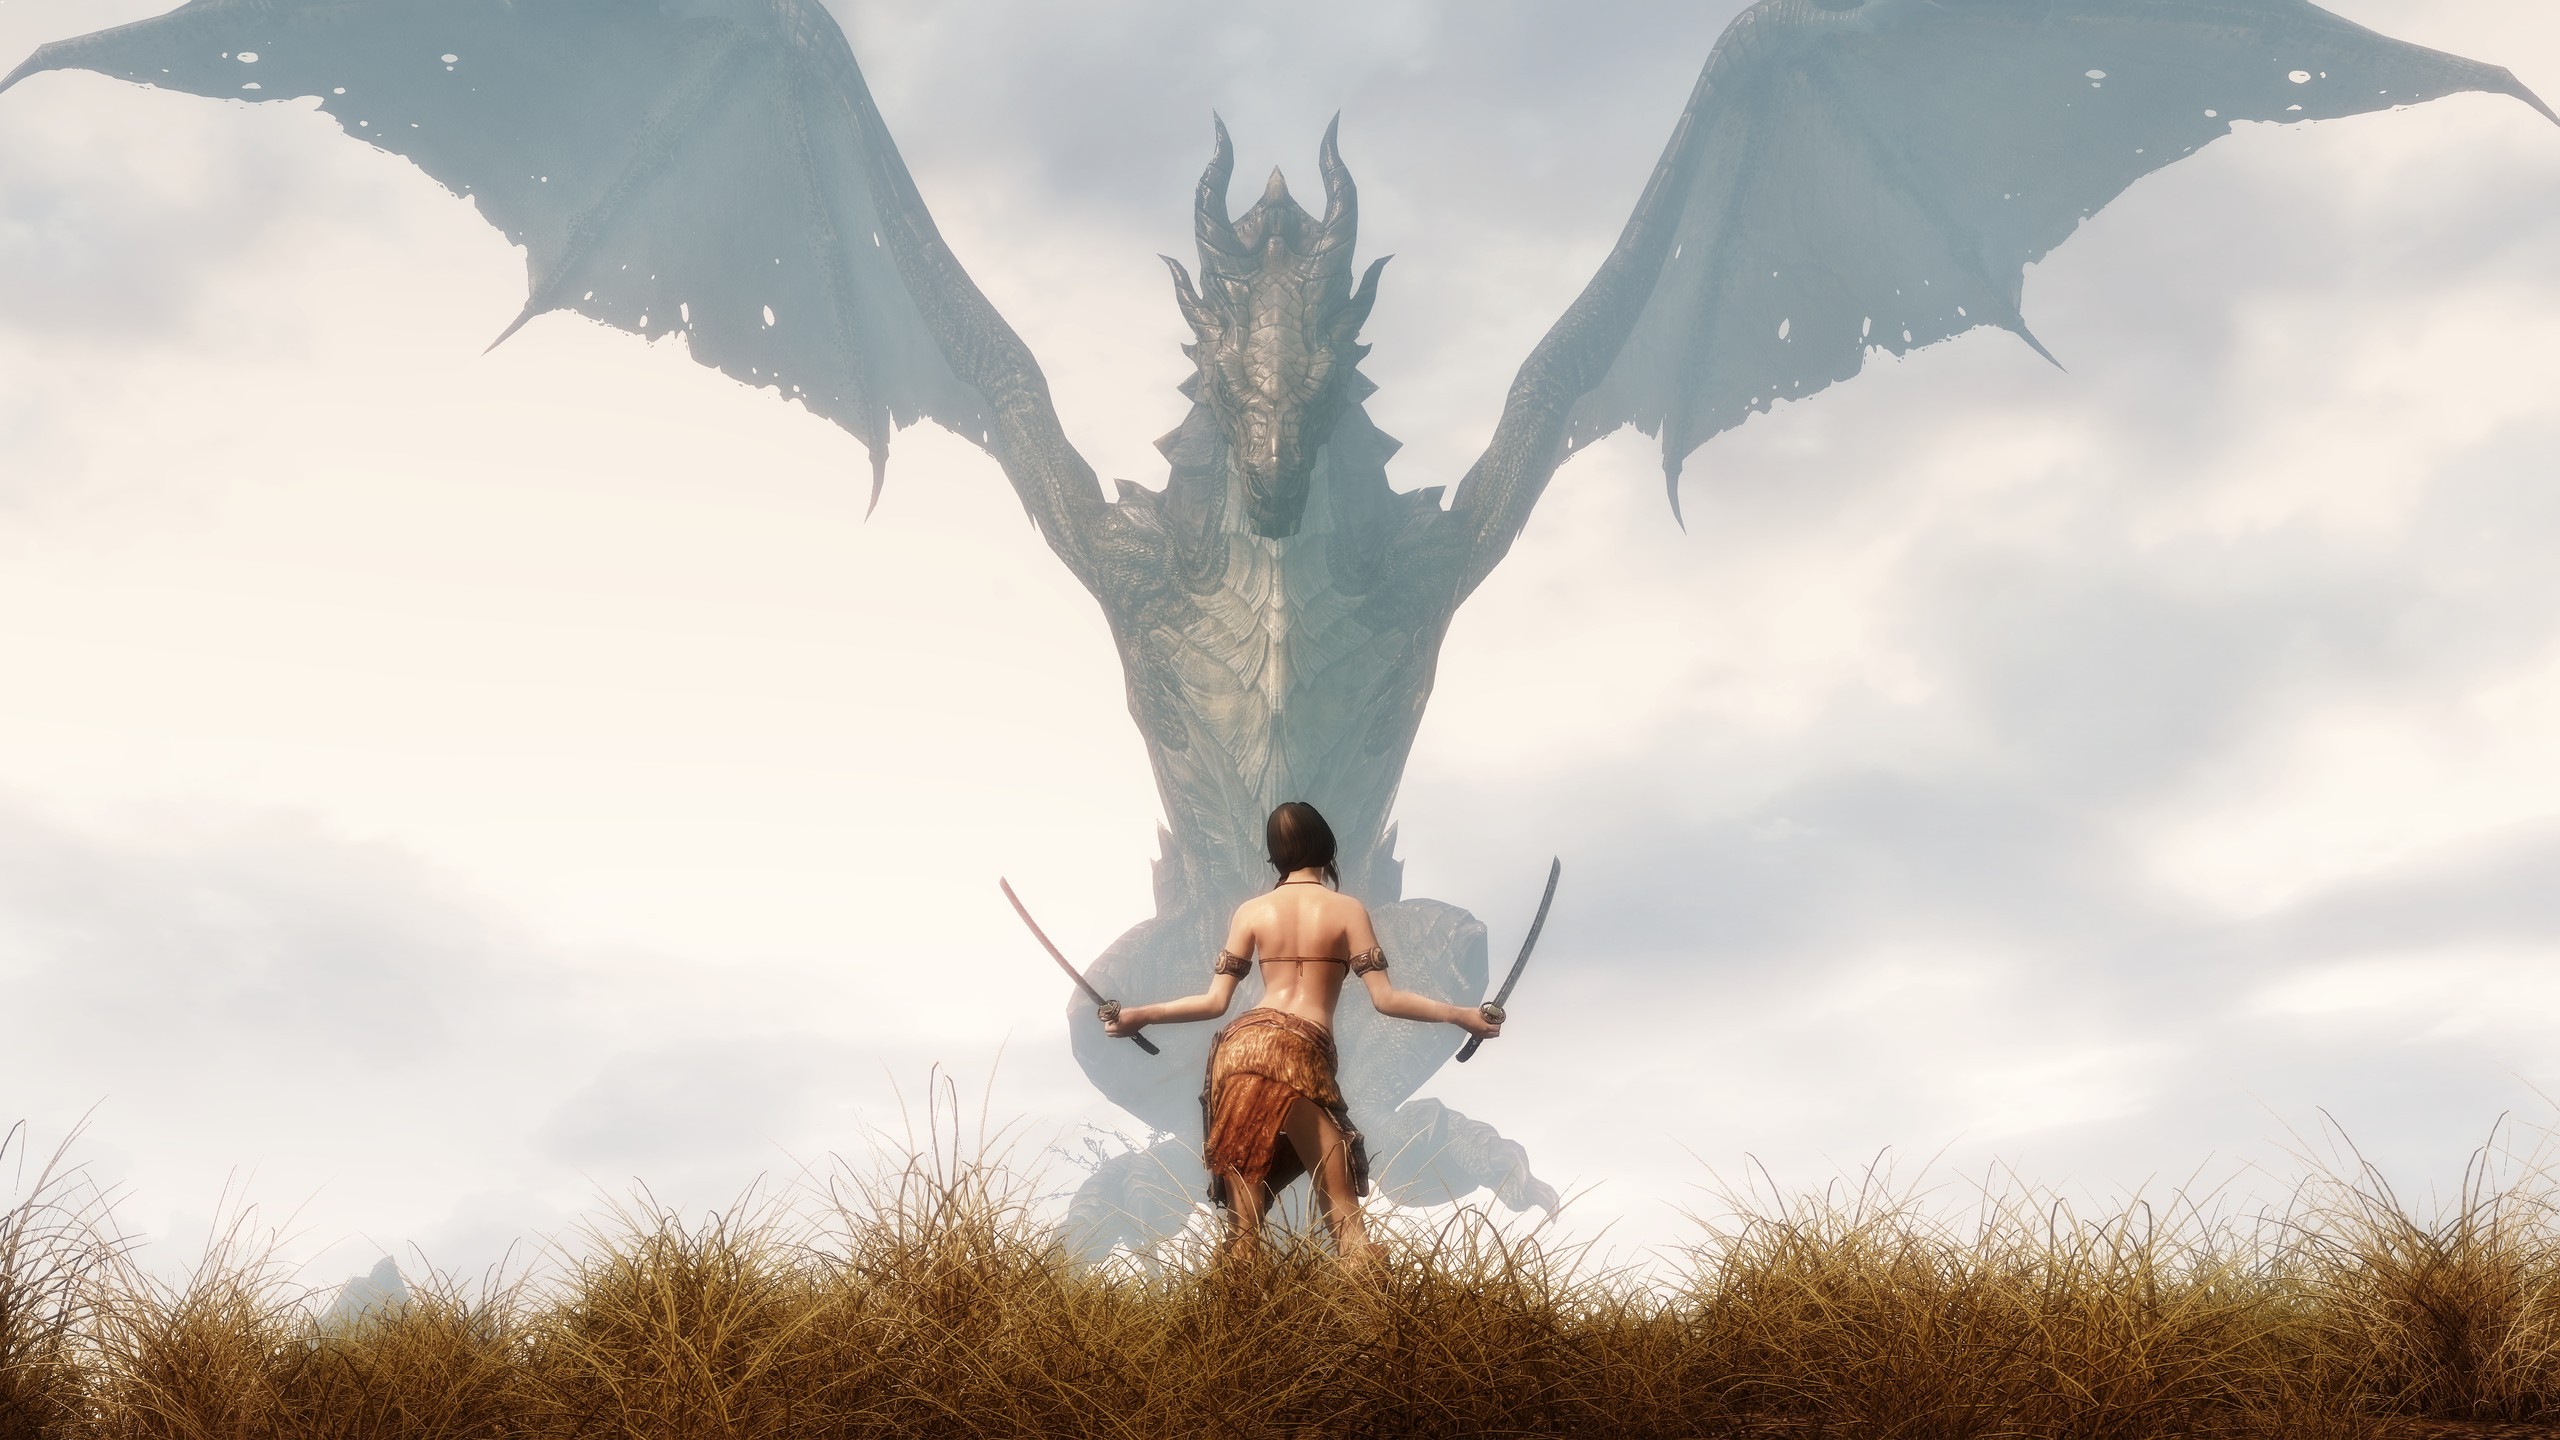 Wallpaper The Elder Scrolls V: Skyrim girl and dragon